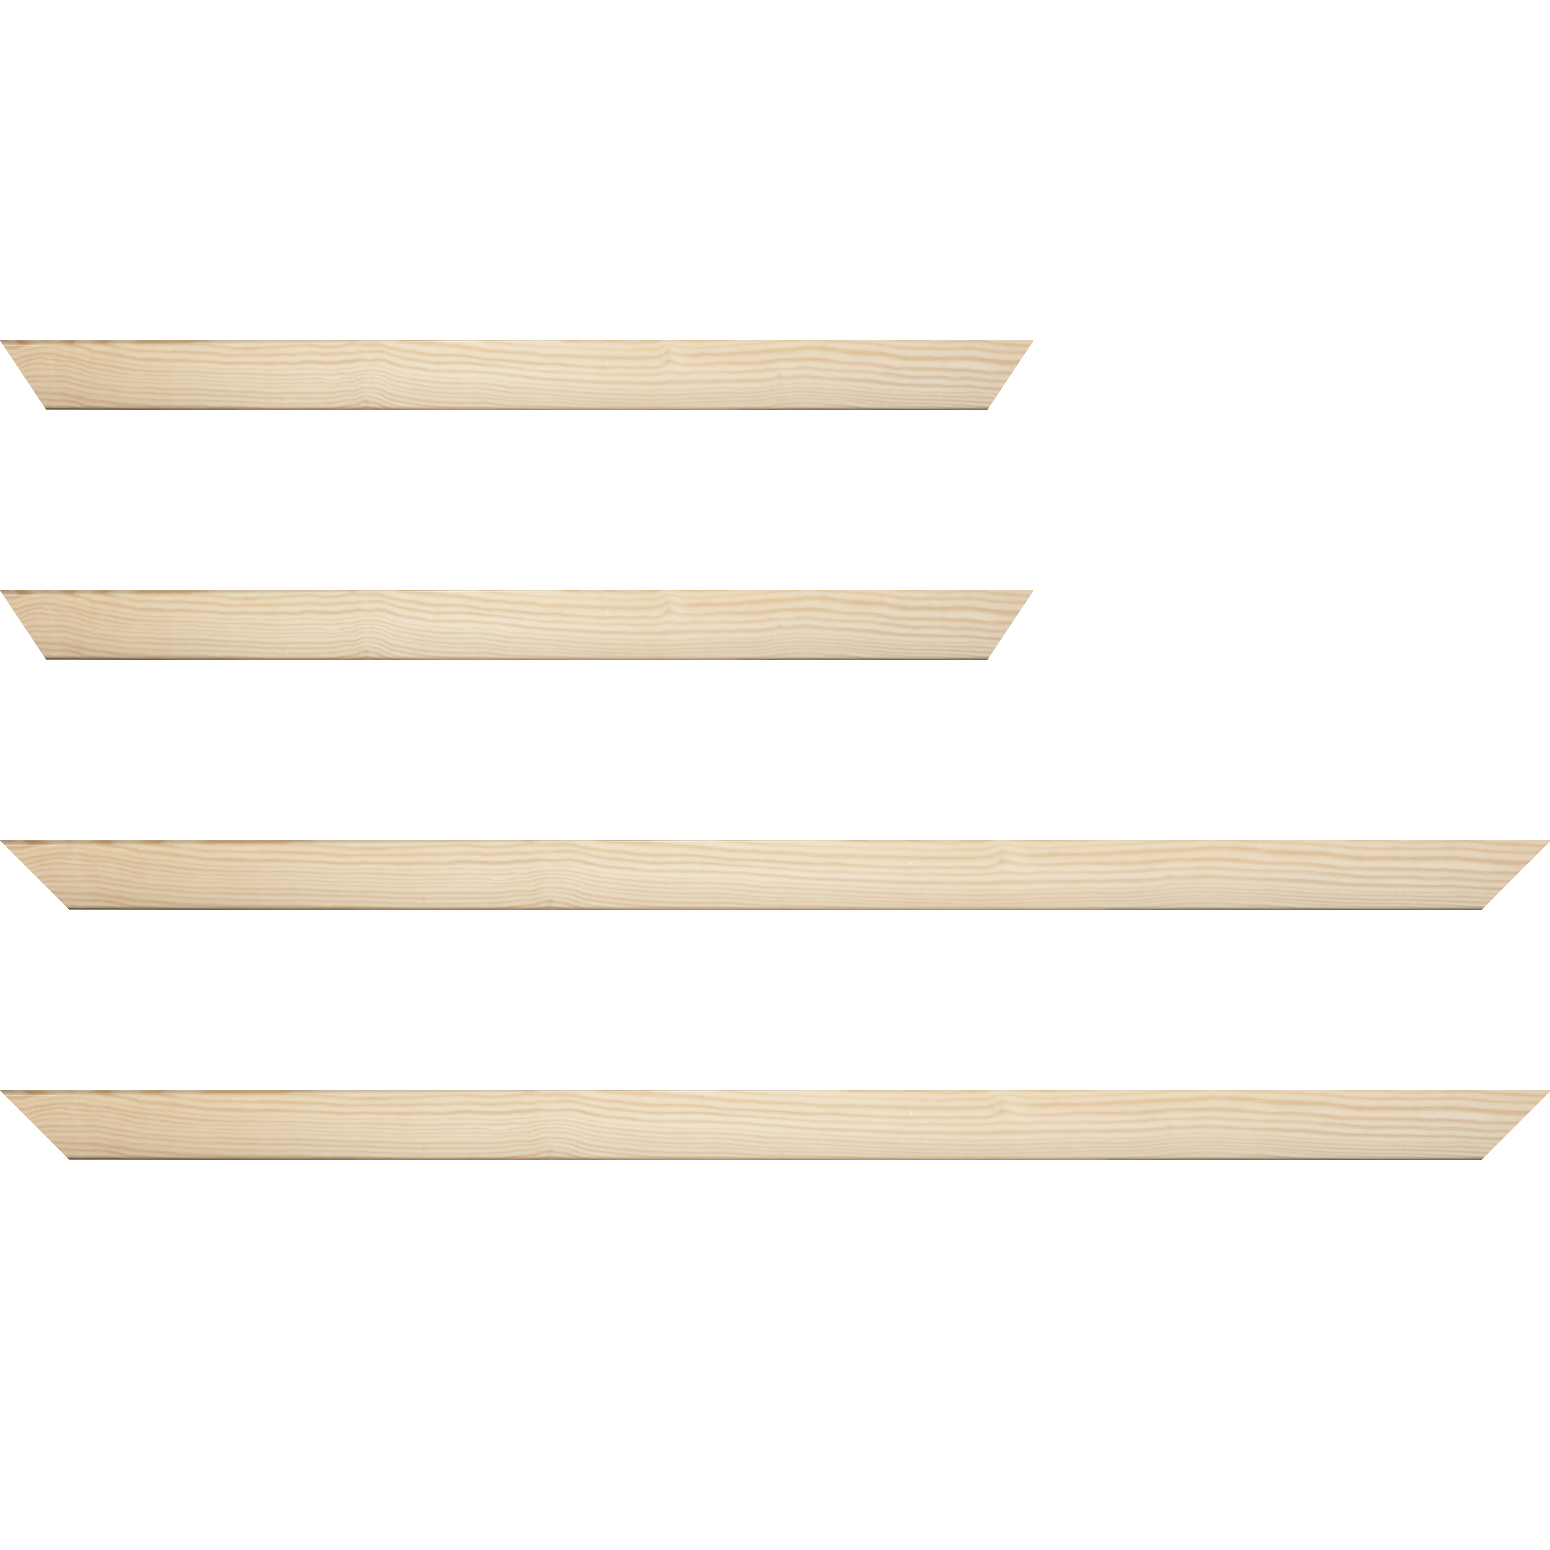 Baguette bois profil arrondi en pente plongeant largeur 2.4cm couleur naturel finition vernis brillant,veine du bois  apparent (pin) , - 18x24